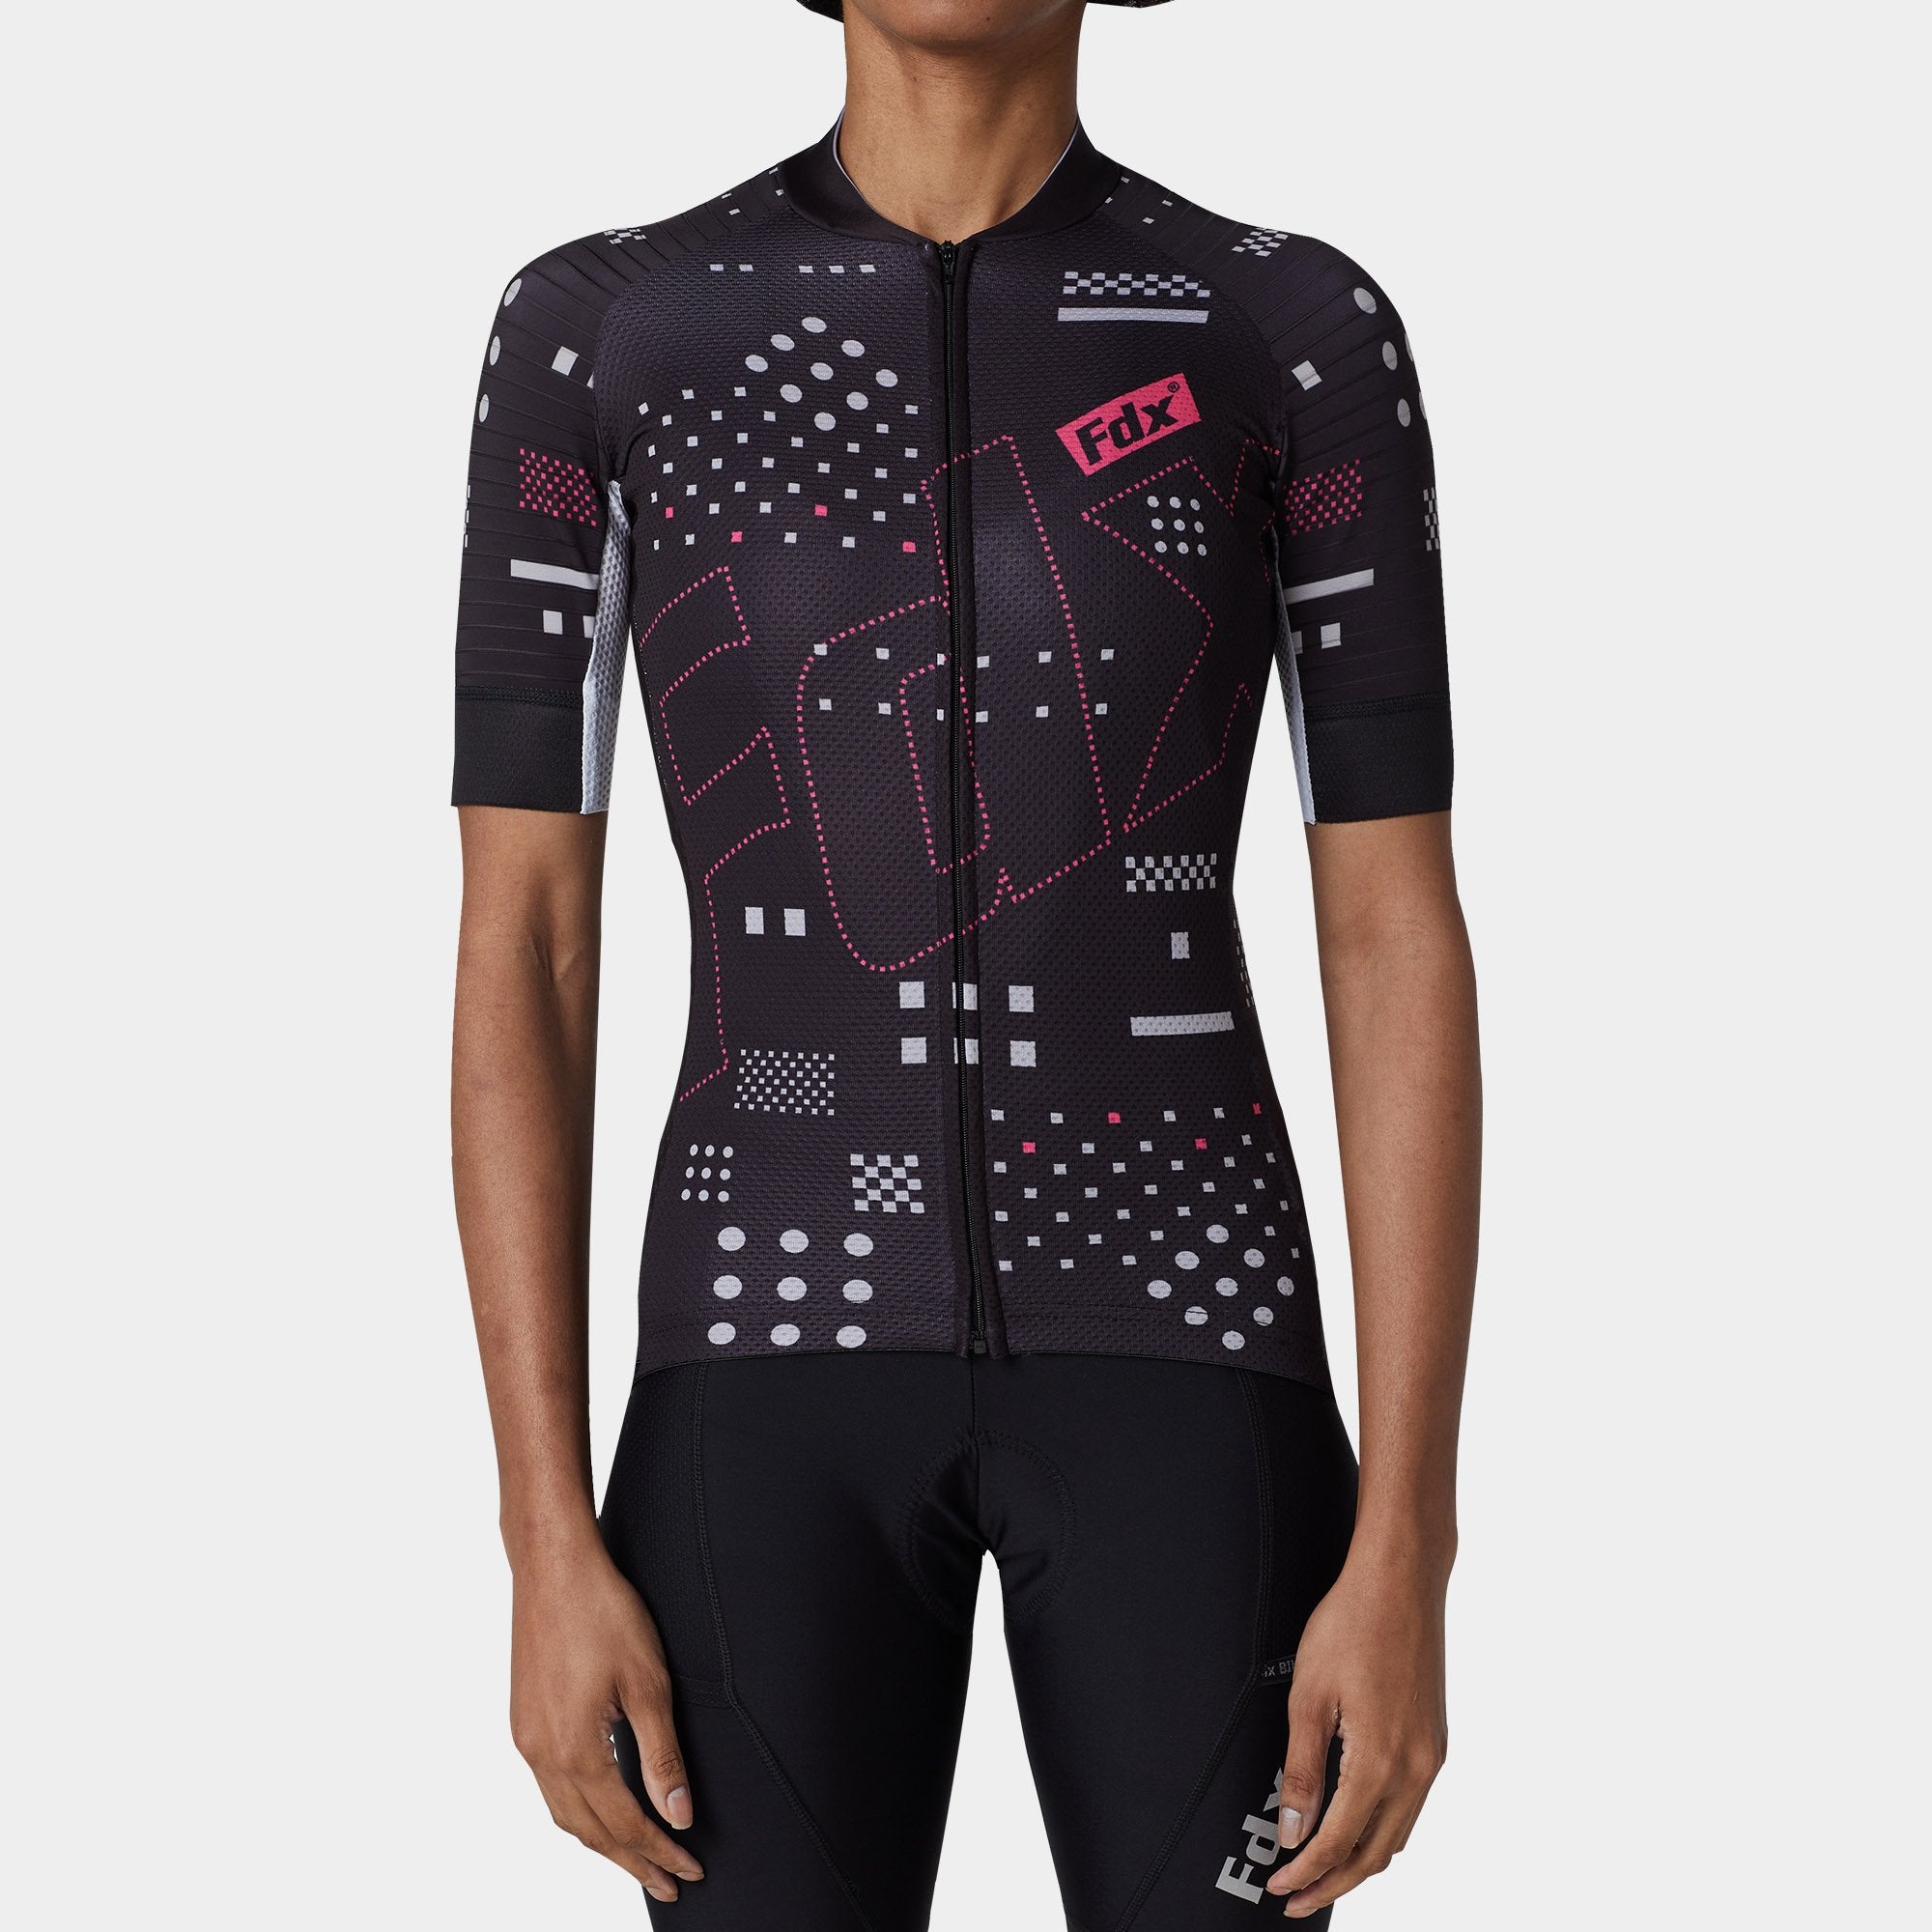 Fdx Womens Black Short Sleeve Cycling Jersey for Summer Best Road Bike Wear Top Light Weight, Full Zipper, Pockets & Hi-viz Reflectors - All Day